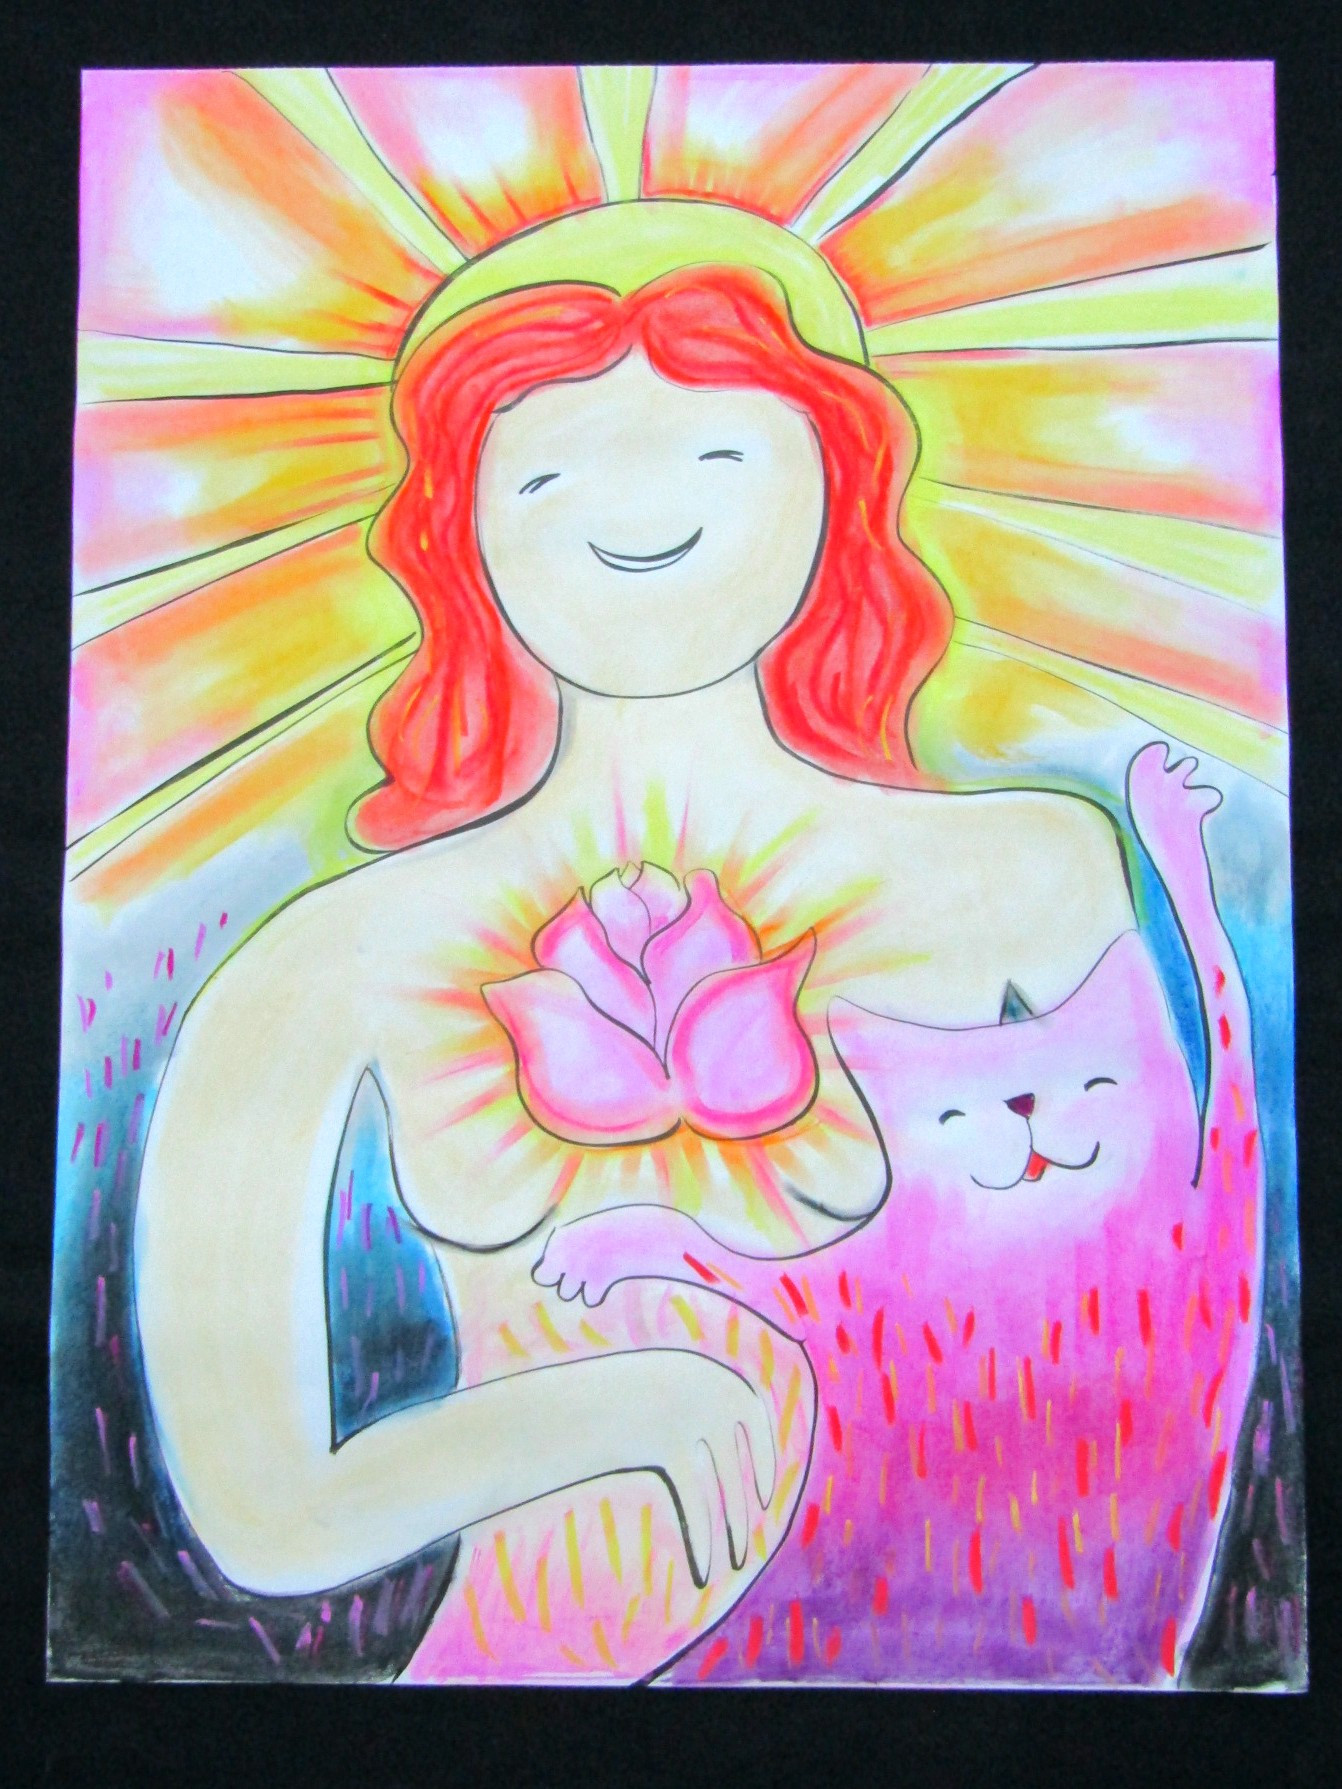 На&nbsp;рисунке изображена женская фигура. У&nbsp;нее рыжие волосы по&nbsp;плечи. Позади её головы сияющее солнце. Она улыбается. Кажется, она счастлива. На&nbsp;её грудь посередине розовый бутон розы, из&nbsp;которого идет сияние. В&nbsp;правом углу кот или кошка. Он_а&nbsp;<nobr>пурпурно-розового</nobr> цвета с&nbsp;красно и&nbsp;желтыми волосками. Он_а&nbsp;тоже кажется счастливой. Левая лапа животного поднята вверх, а&nbsp;правая вытянута в&nbsp;сторону. Авторка картины&nbsp;— Юлия Цветкова.